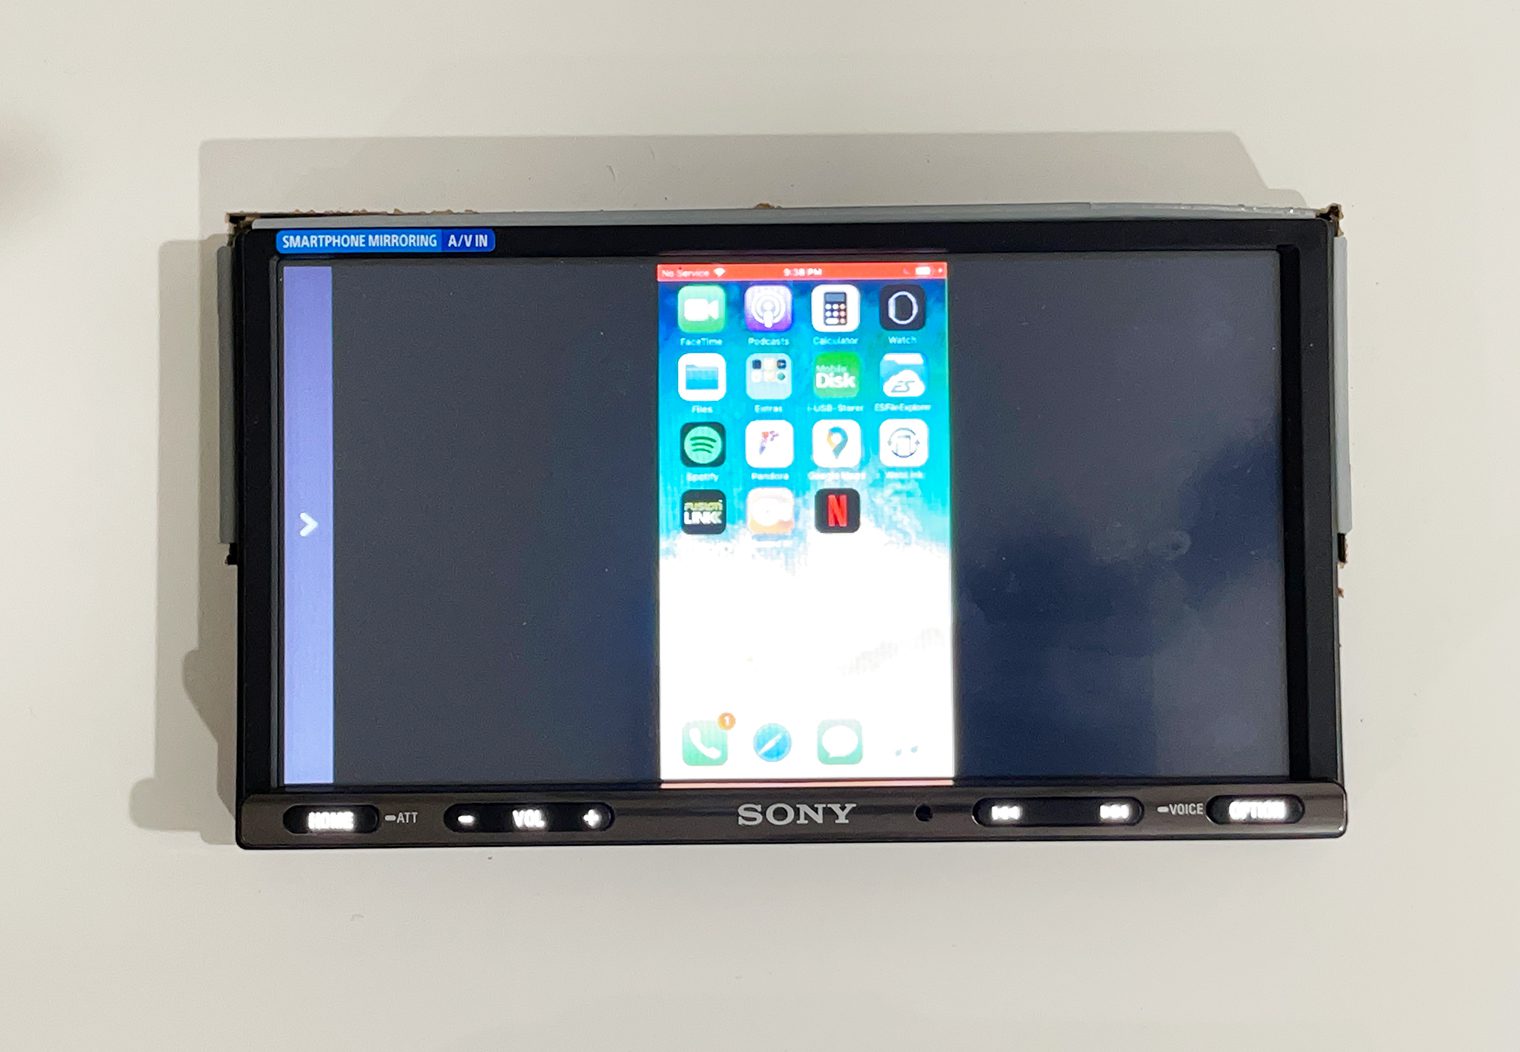 Sony XAV-AX3200 webcast